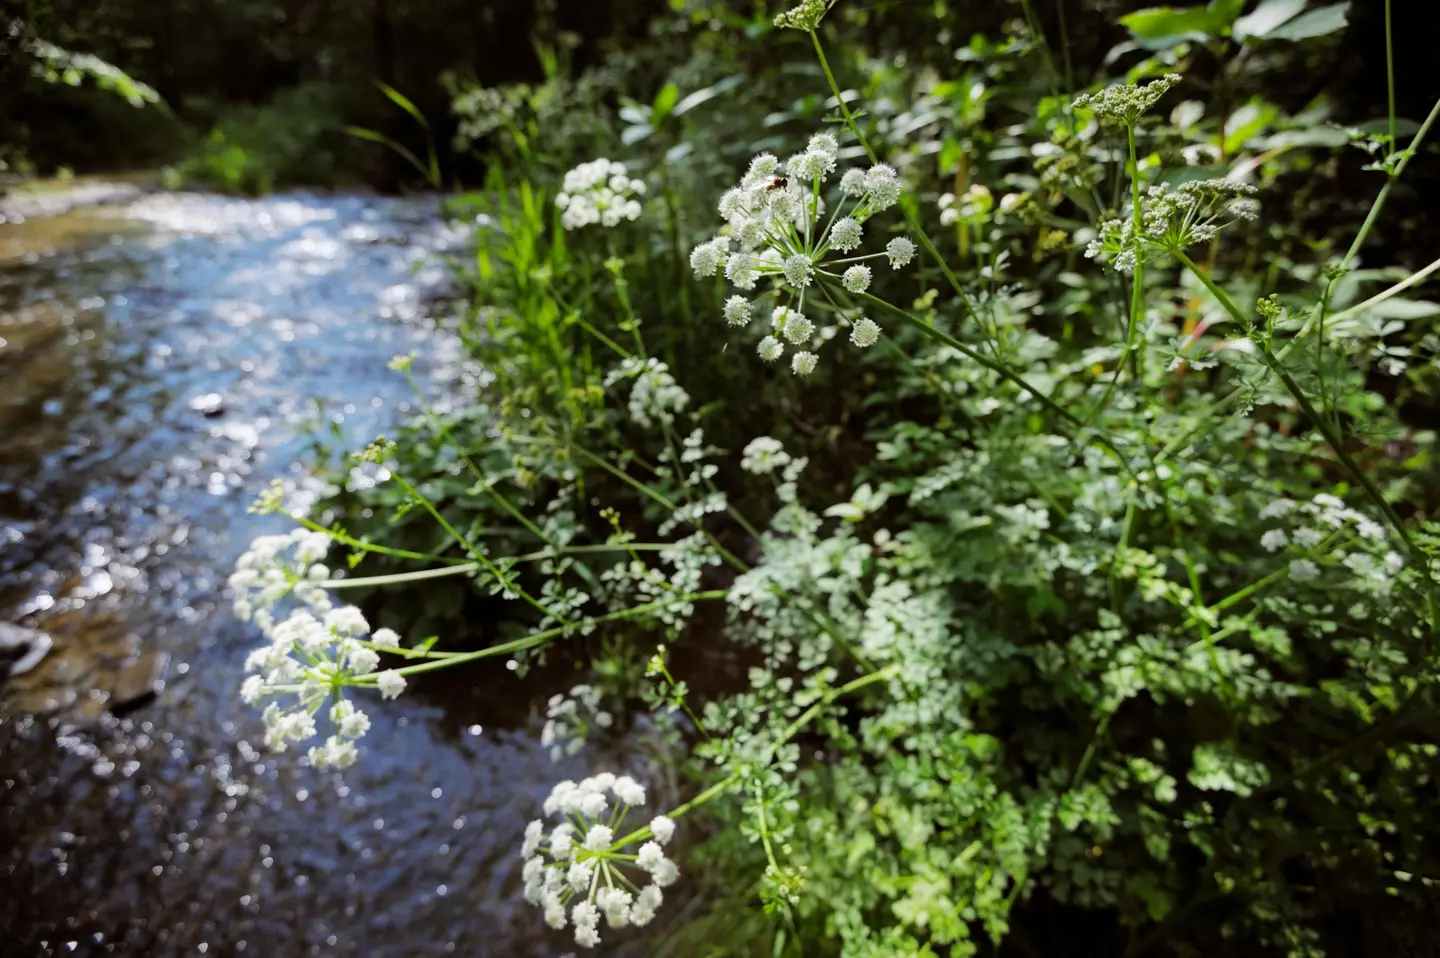 Hemlock Water Dropwort is highly toxic.